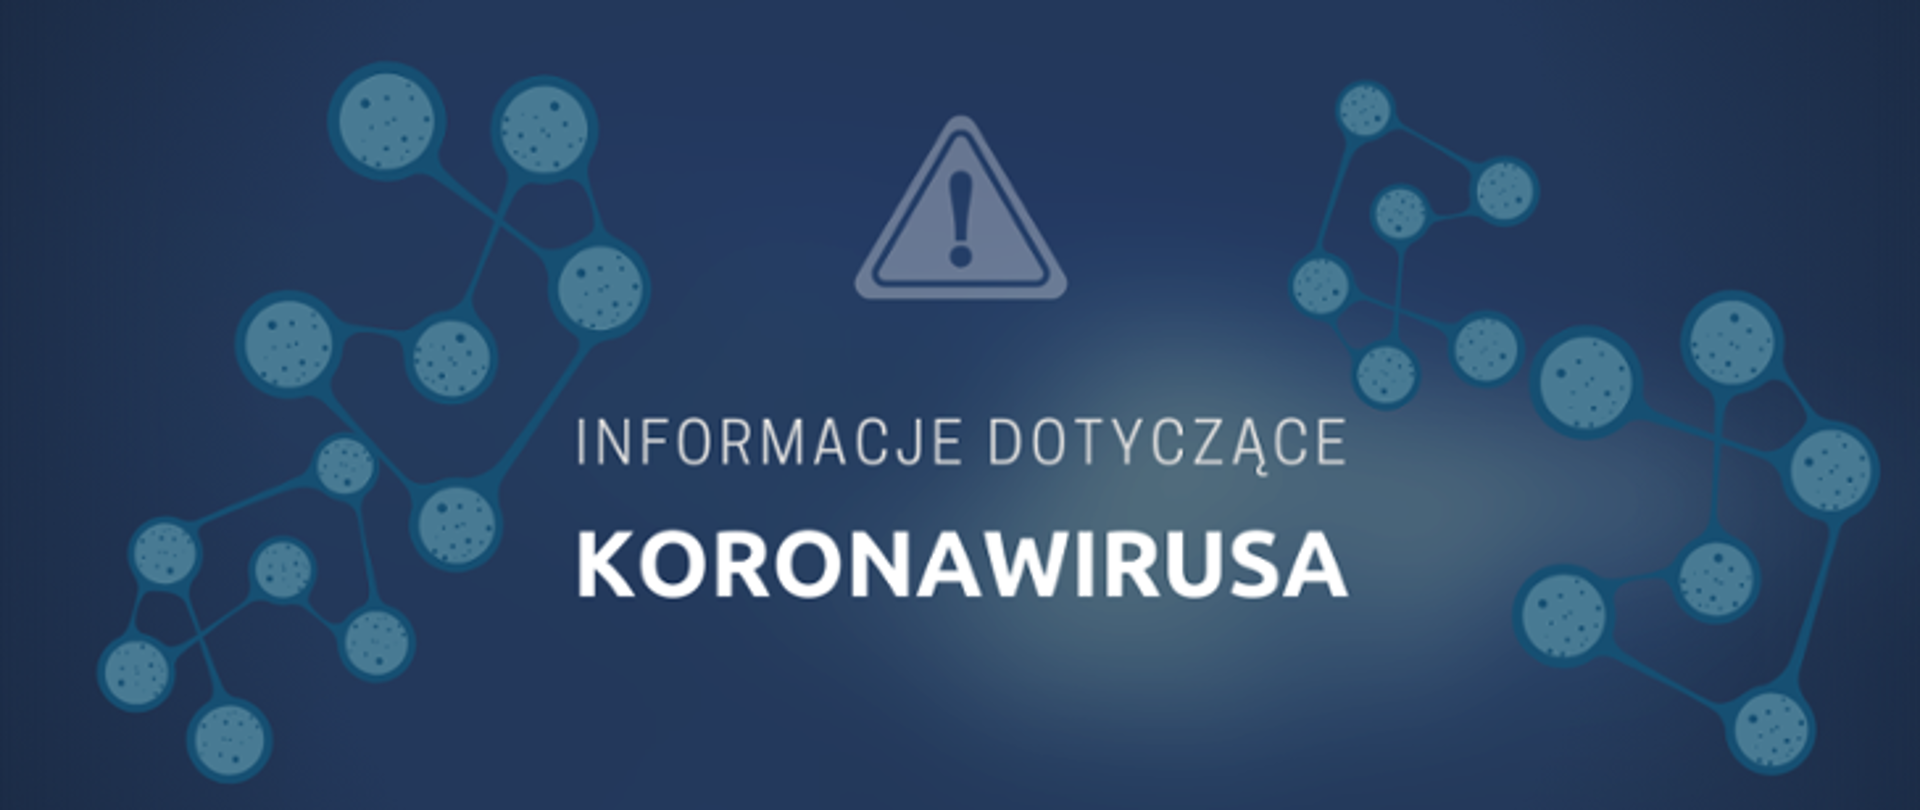 Informacje dot. koronawirusa